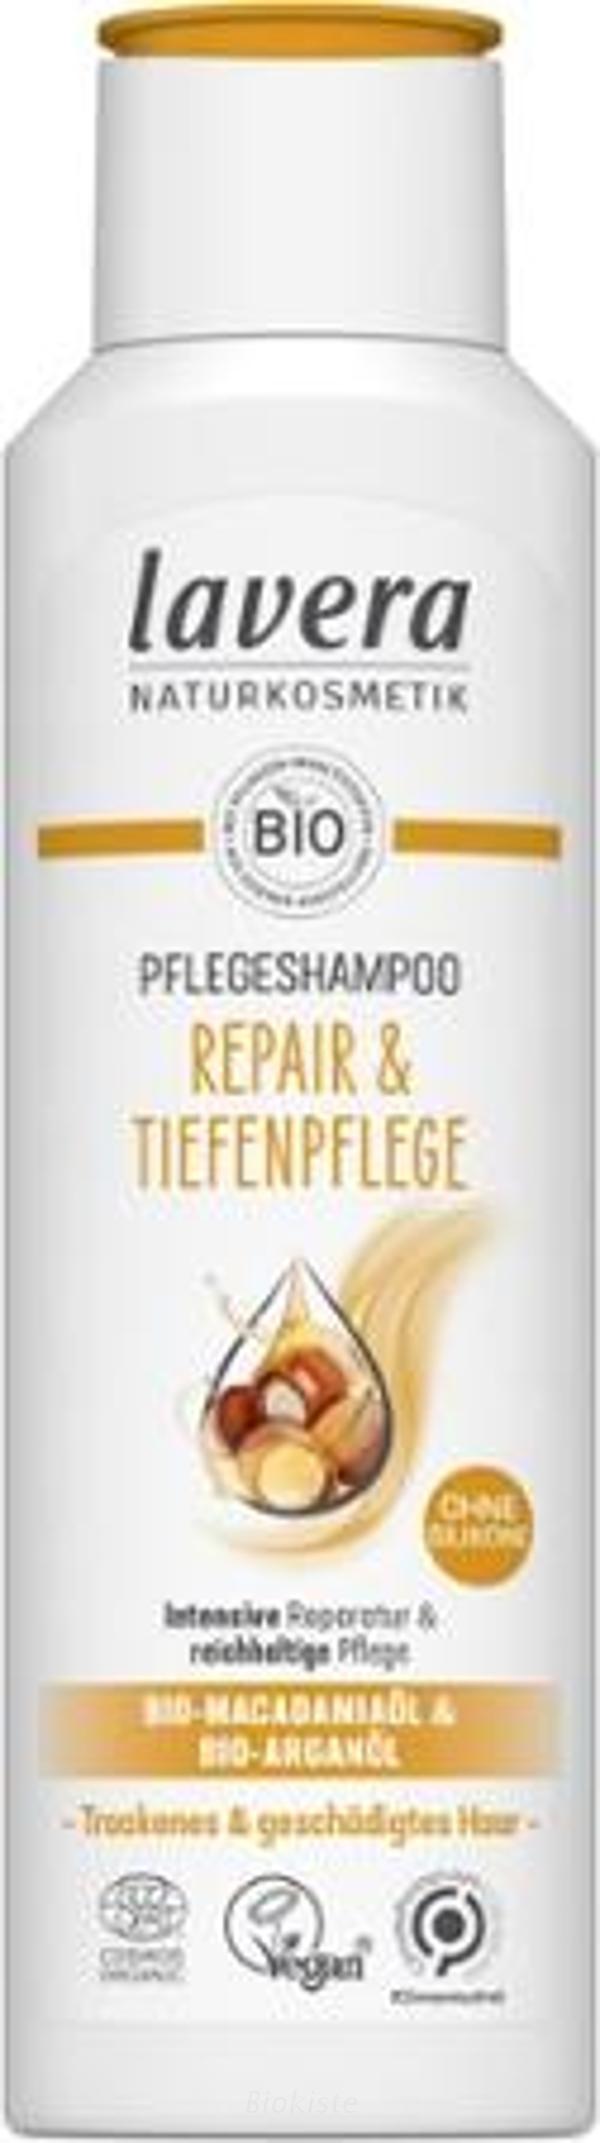 Produktfoto zu Shampoo Repair und Pflege 250 ml